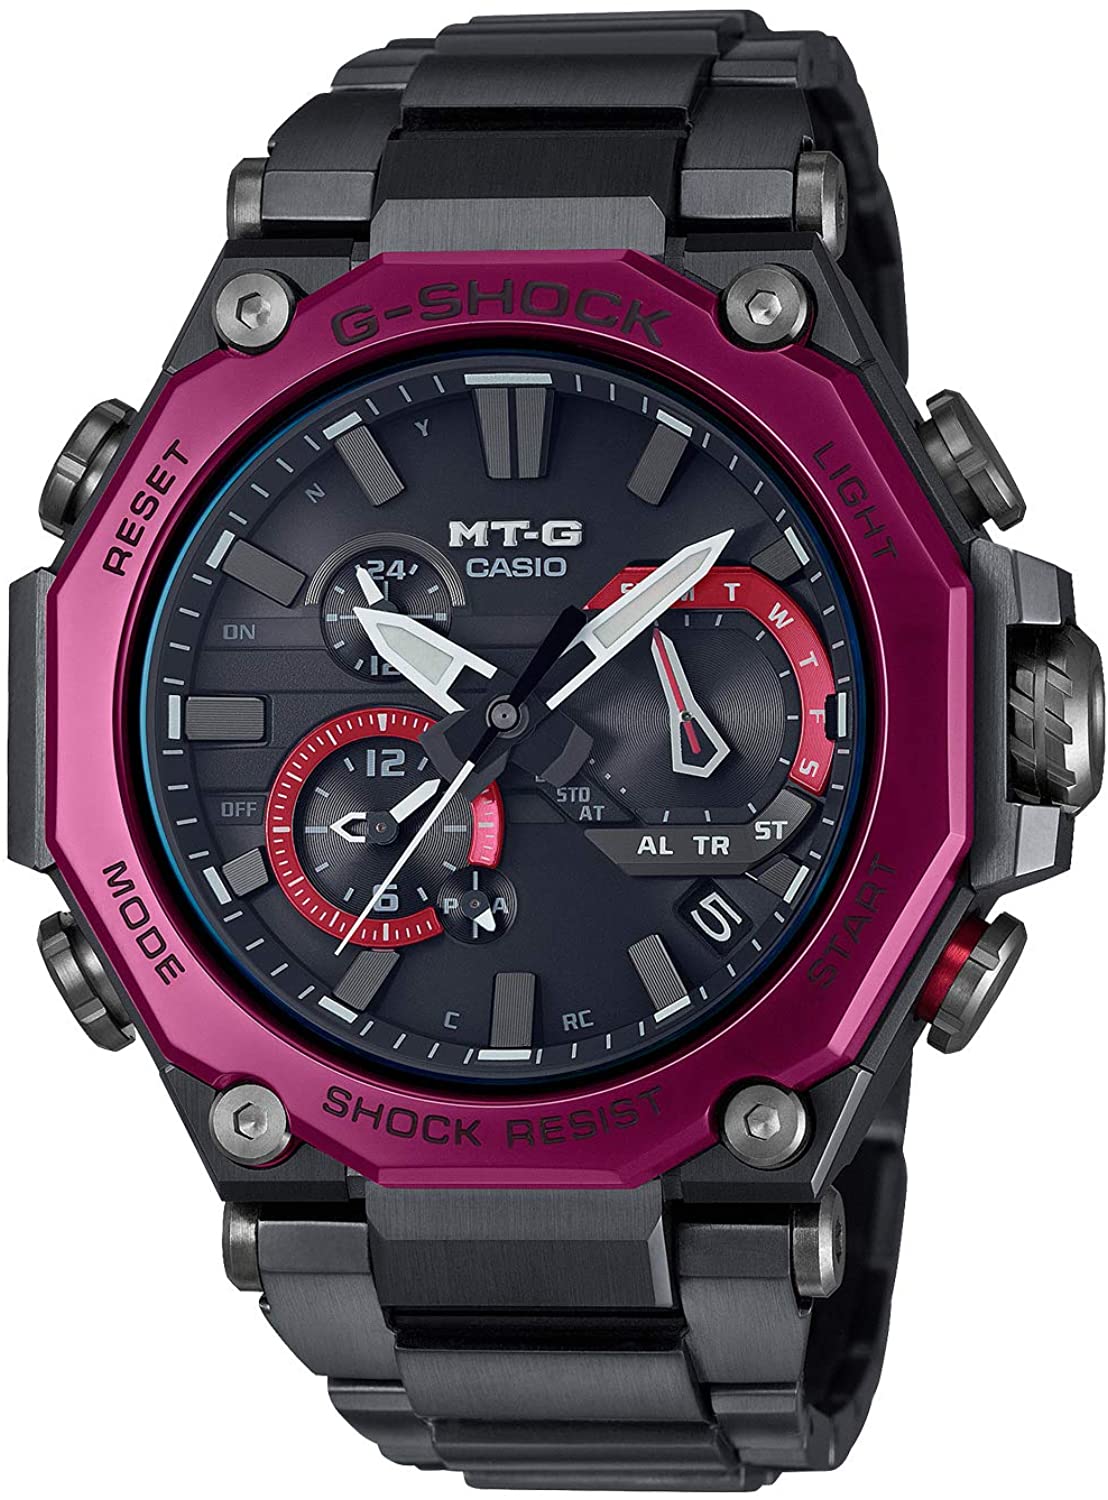 [カシオ] 腕時計 ジーショック MT-G Bluetooth 搭載 電波ソーラー デュアルコアガード構造 MTG-B2000BD-1A4JF